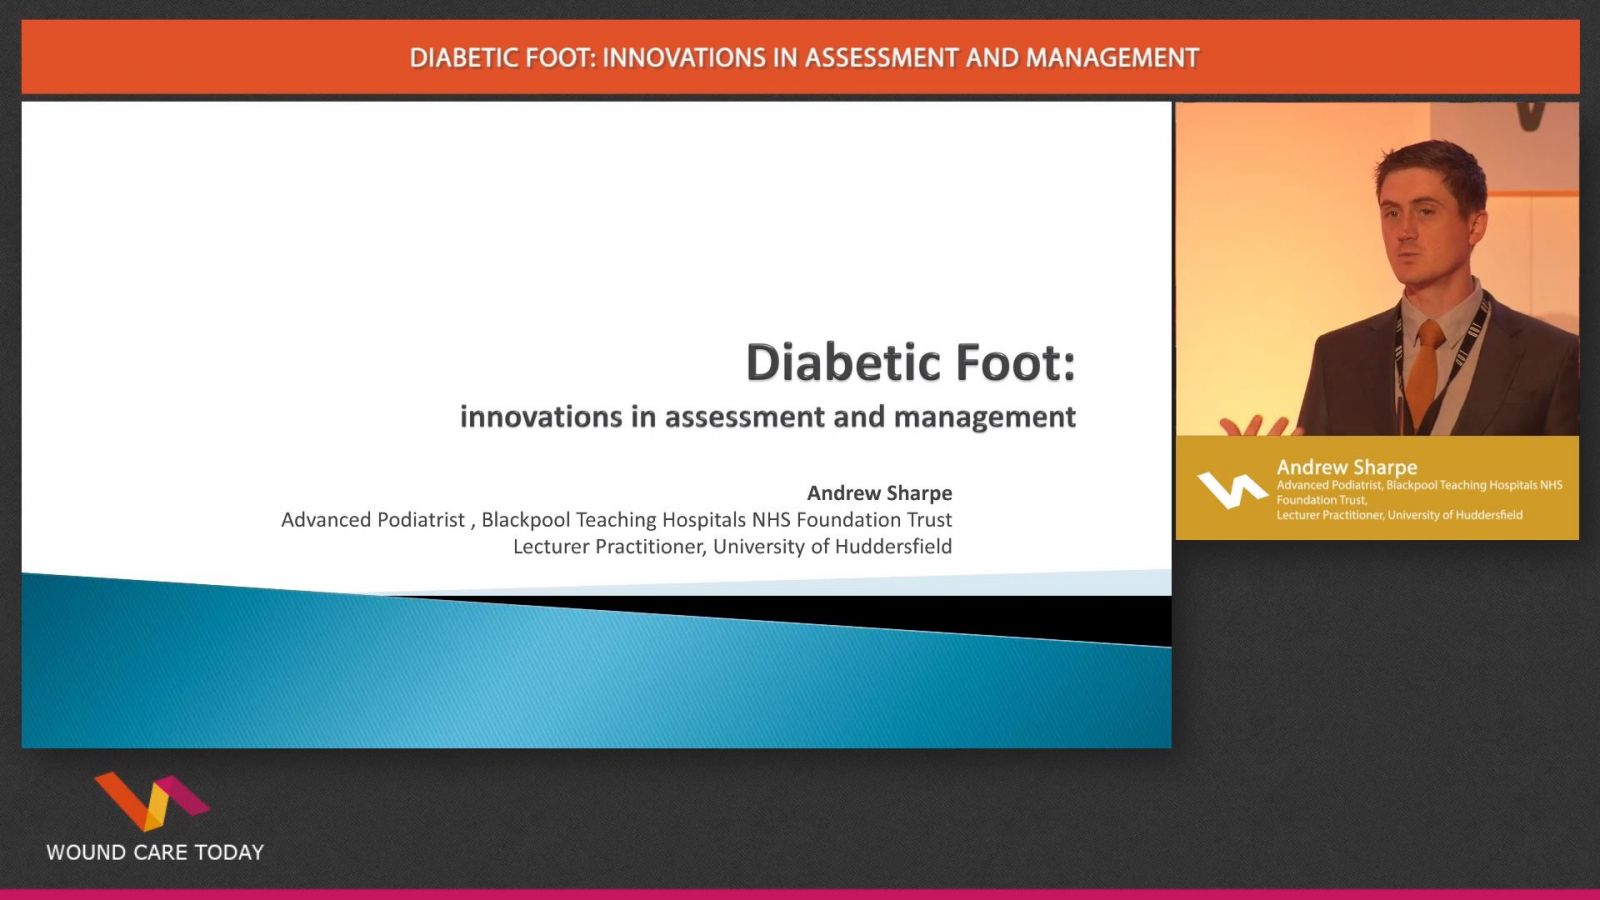 diabetic-foot